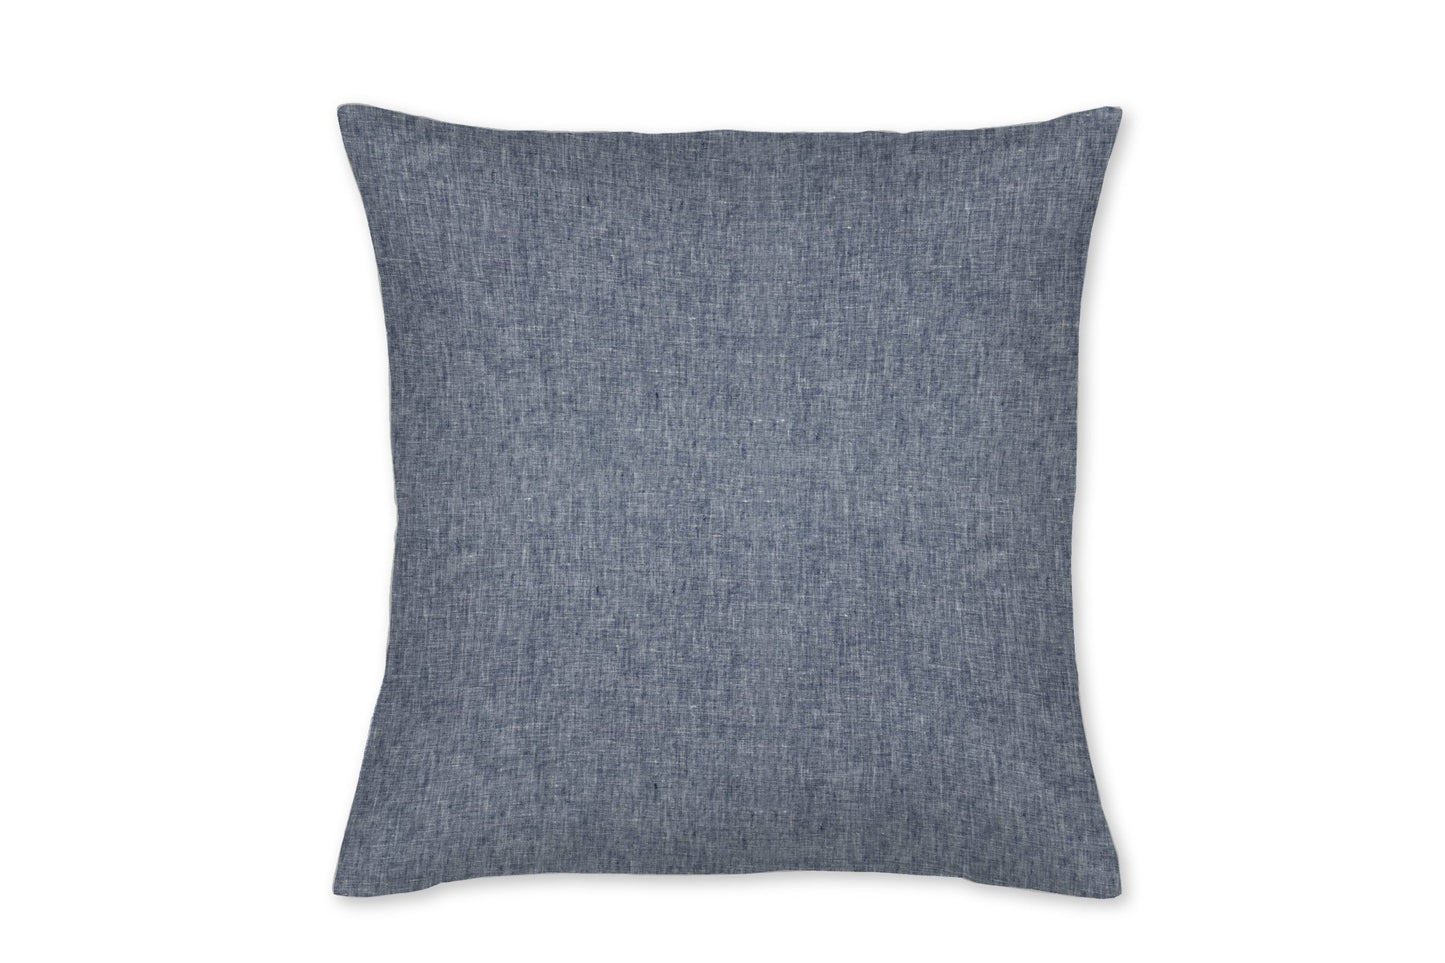 Newport Denim Blue Stripe Linen Throw Pillow - New Arrivals Inc